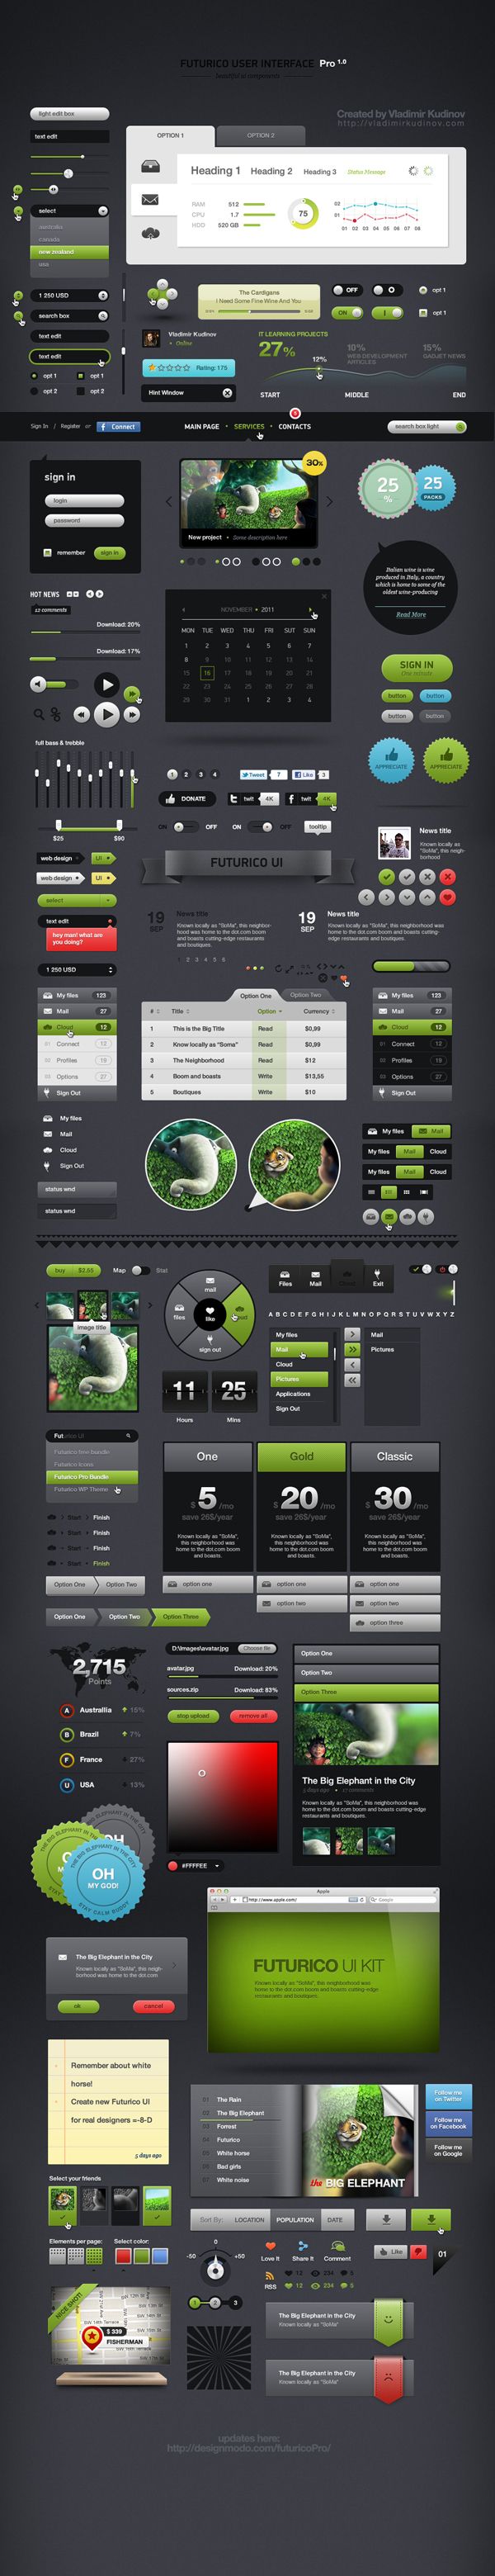 Futurico User Interface Pro by Vladimir Kudinov, via Behance